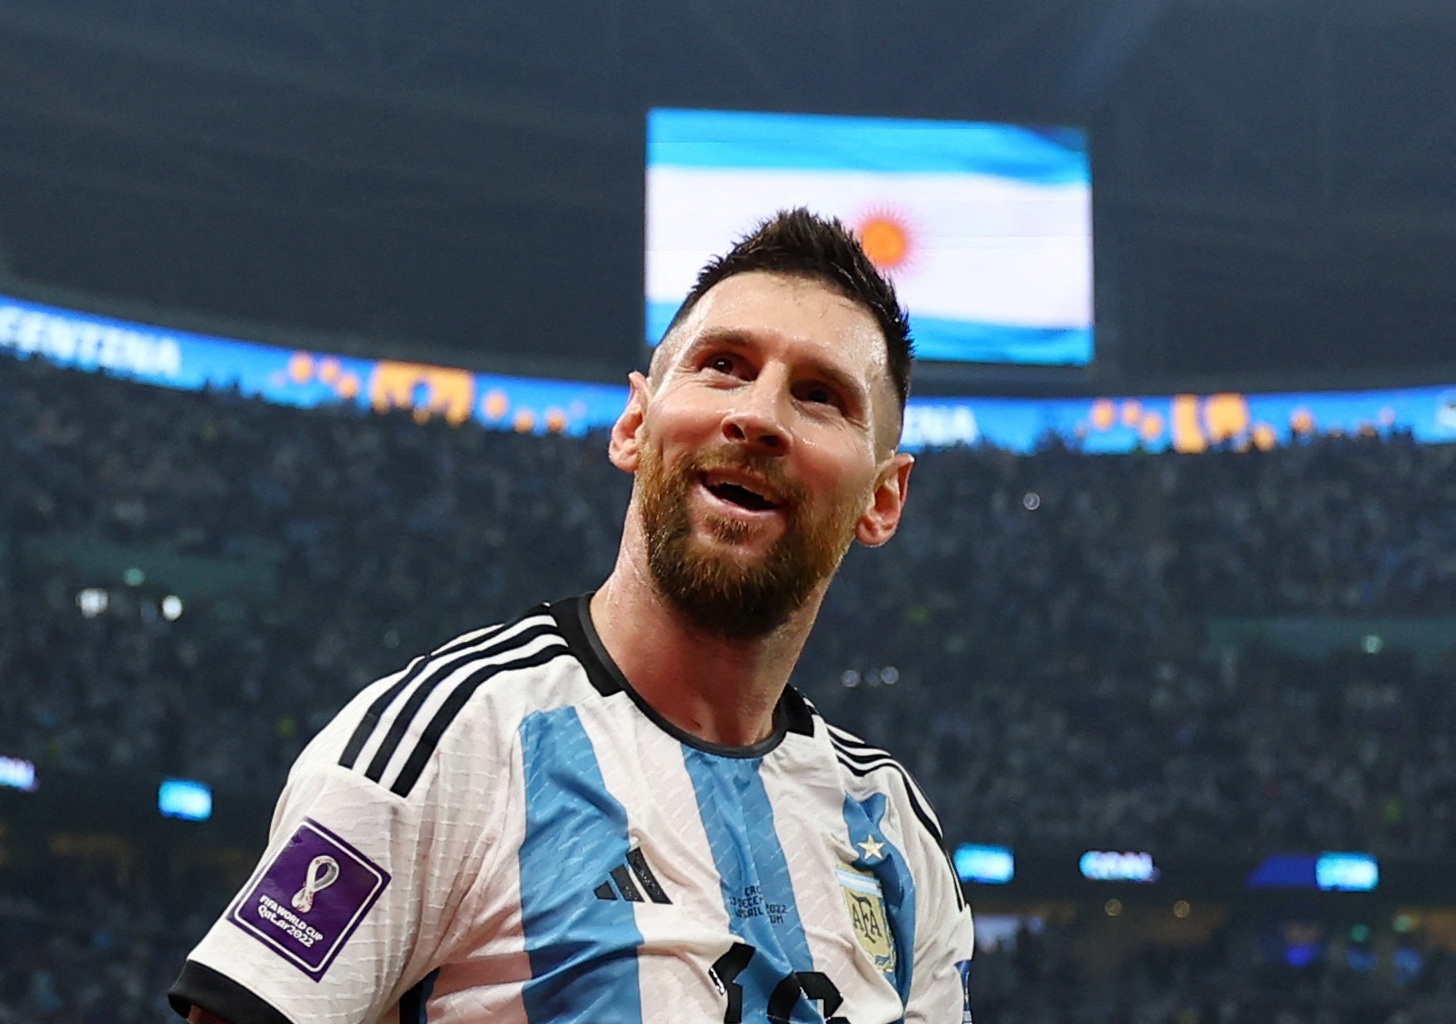 Chung kết Argentina Messi được xem là một trong những trận đấu quan trọng nhất của anh ta trong sự nghiệp, và cũng là một trong những trận đấu đáng nhớ nhất trong lịch sử bóng đá thế giới. Hãy xem hình ảnh về trận chung kết này để thấy Messi đã làm gì để giành chiến thắng cho đội tuyển quốc gia của mình.